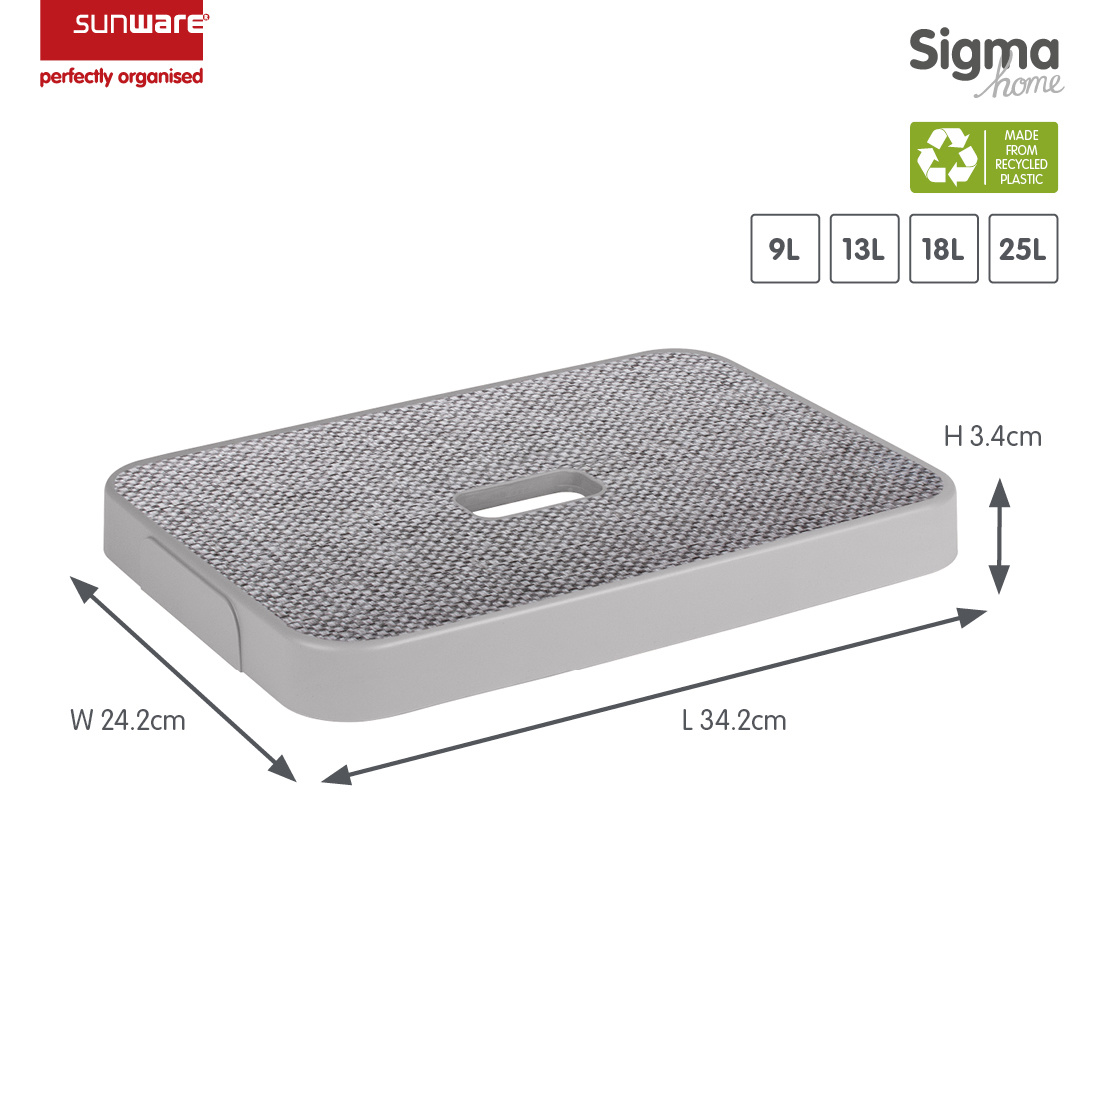 Sigma home fabric grey - storage box 9L, 13L, 18L and 25L